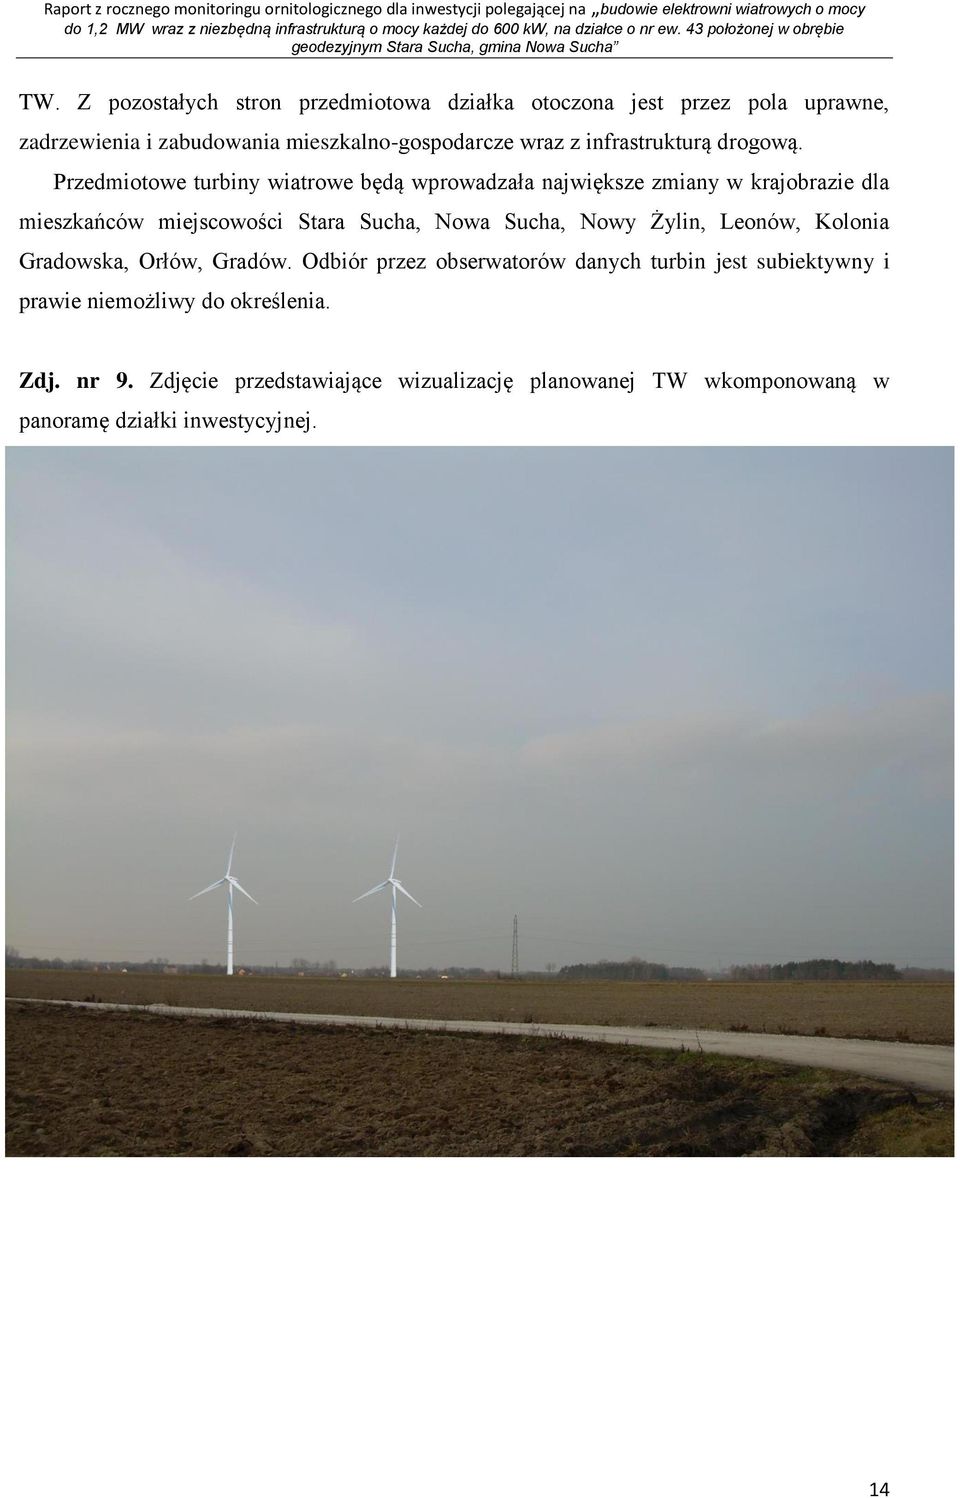 Przedmiotowe turbiny wiatrowe będą wprowadzała największe zmiany w krajobrazie dla mieszkańców miejscowości Stara Sucha, Nowa Sucha, Nowy